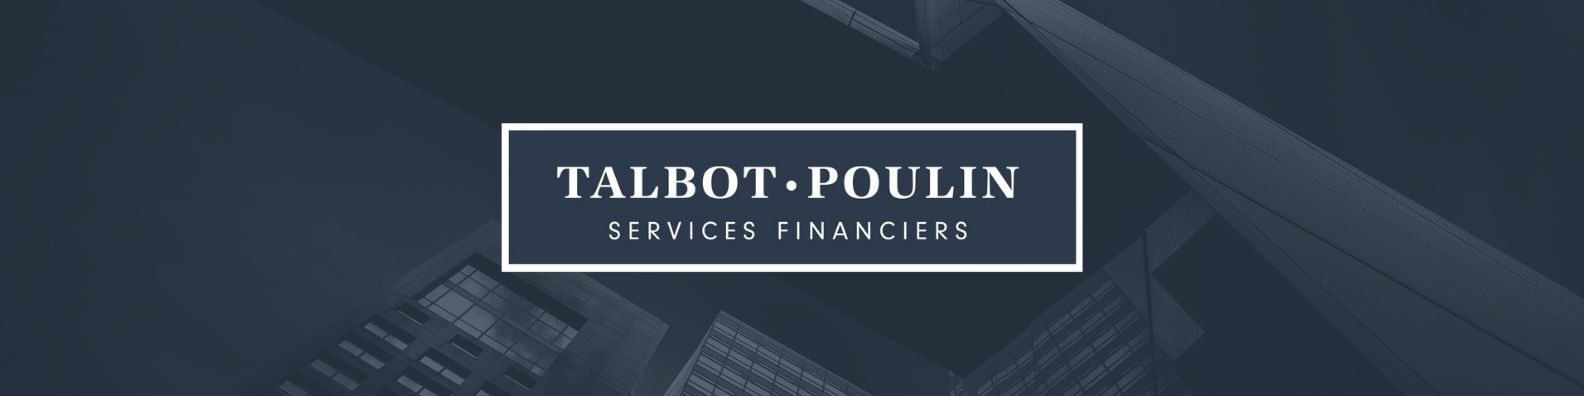 Talbot Poulin Services Financiers Sainte Marie 1